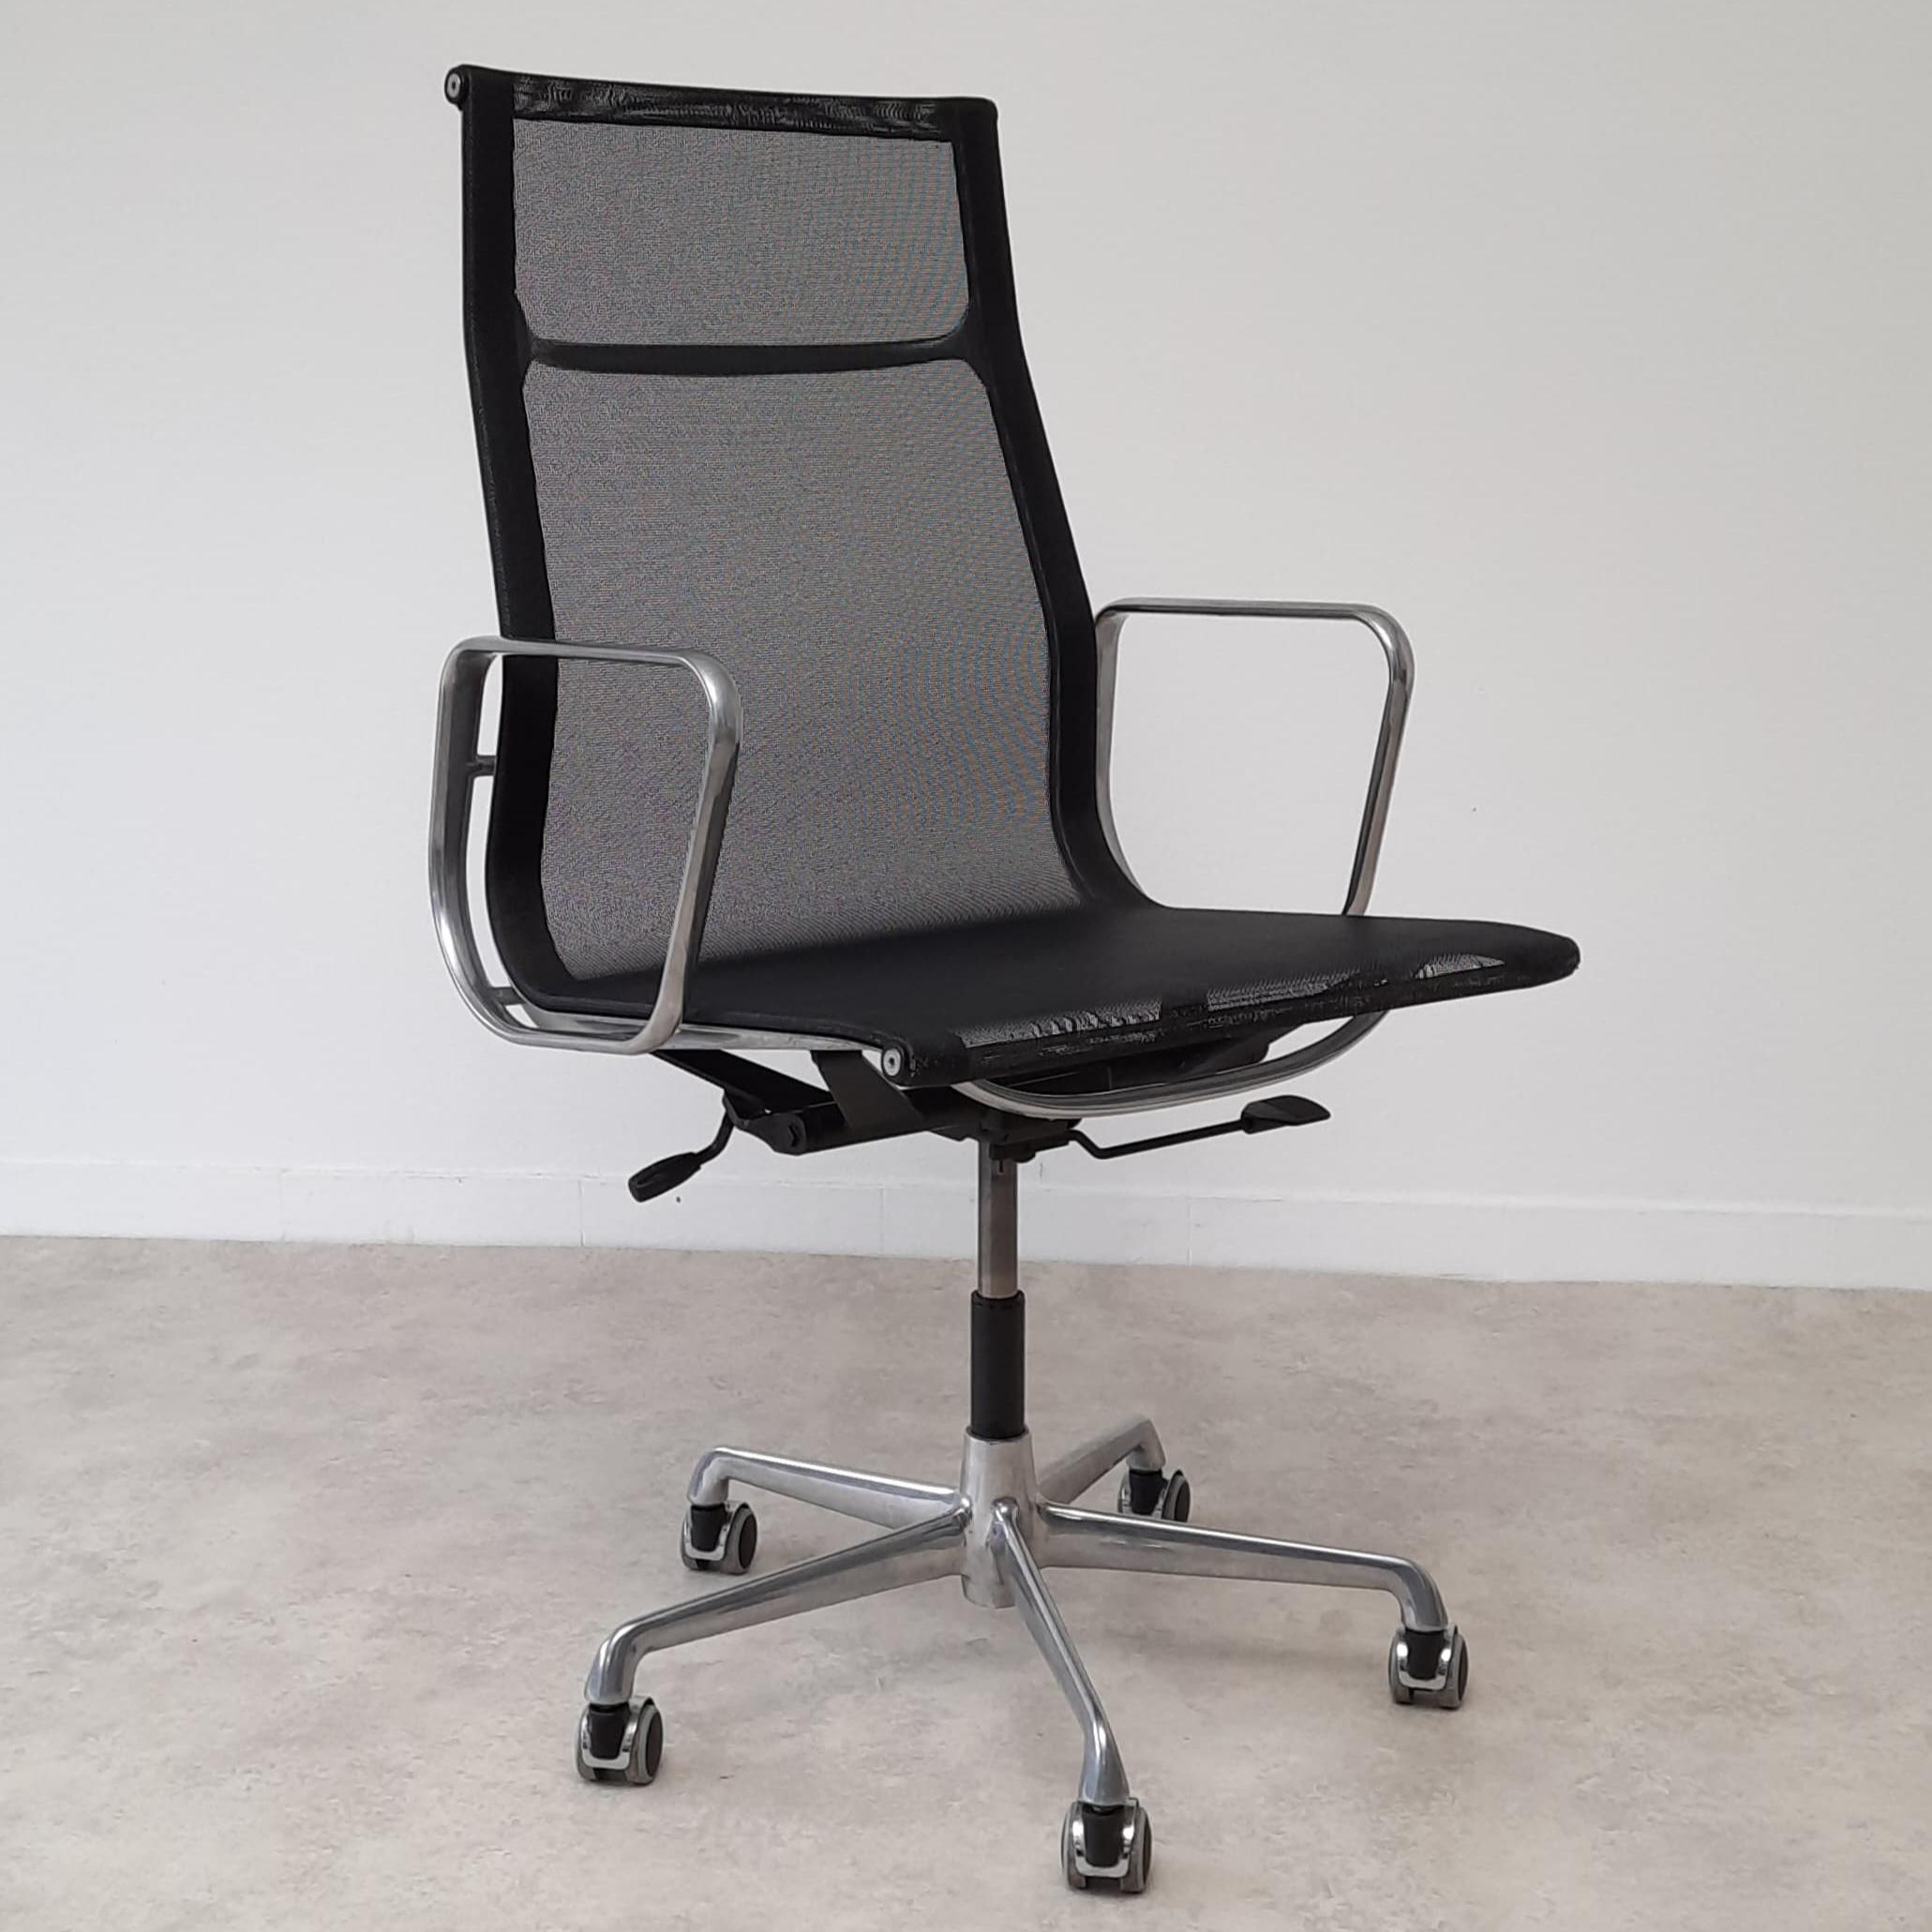 
Magnifique fauteuil de bureau conçu par Charles Eames pour Hermann Miller, modèle exécutif EA 119.

Le fauteuil a été construit par ICF Padova dans les années 1960, la seule entreprise à avoir une licence de construction de Hermann Miller, mêmes